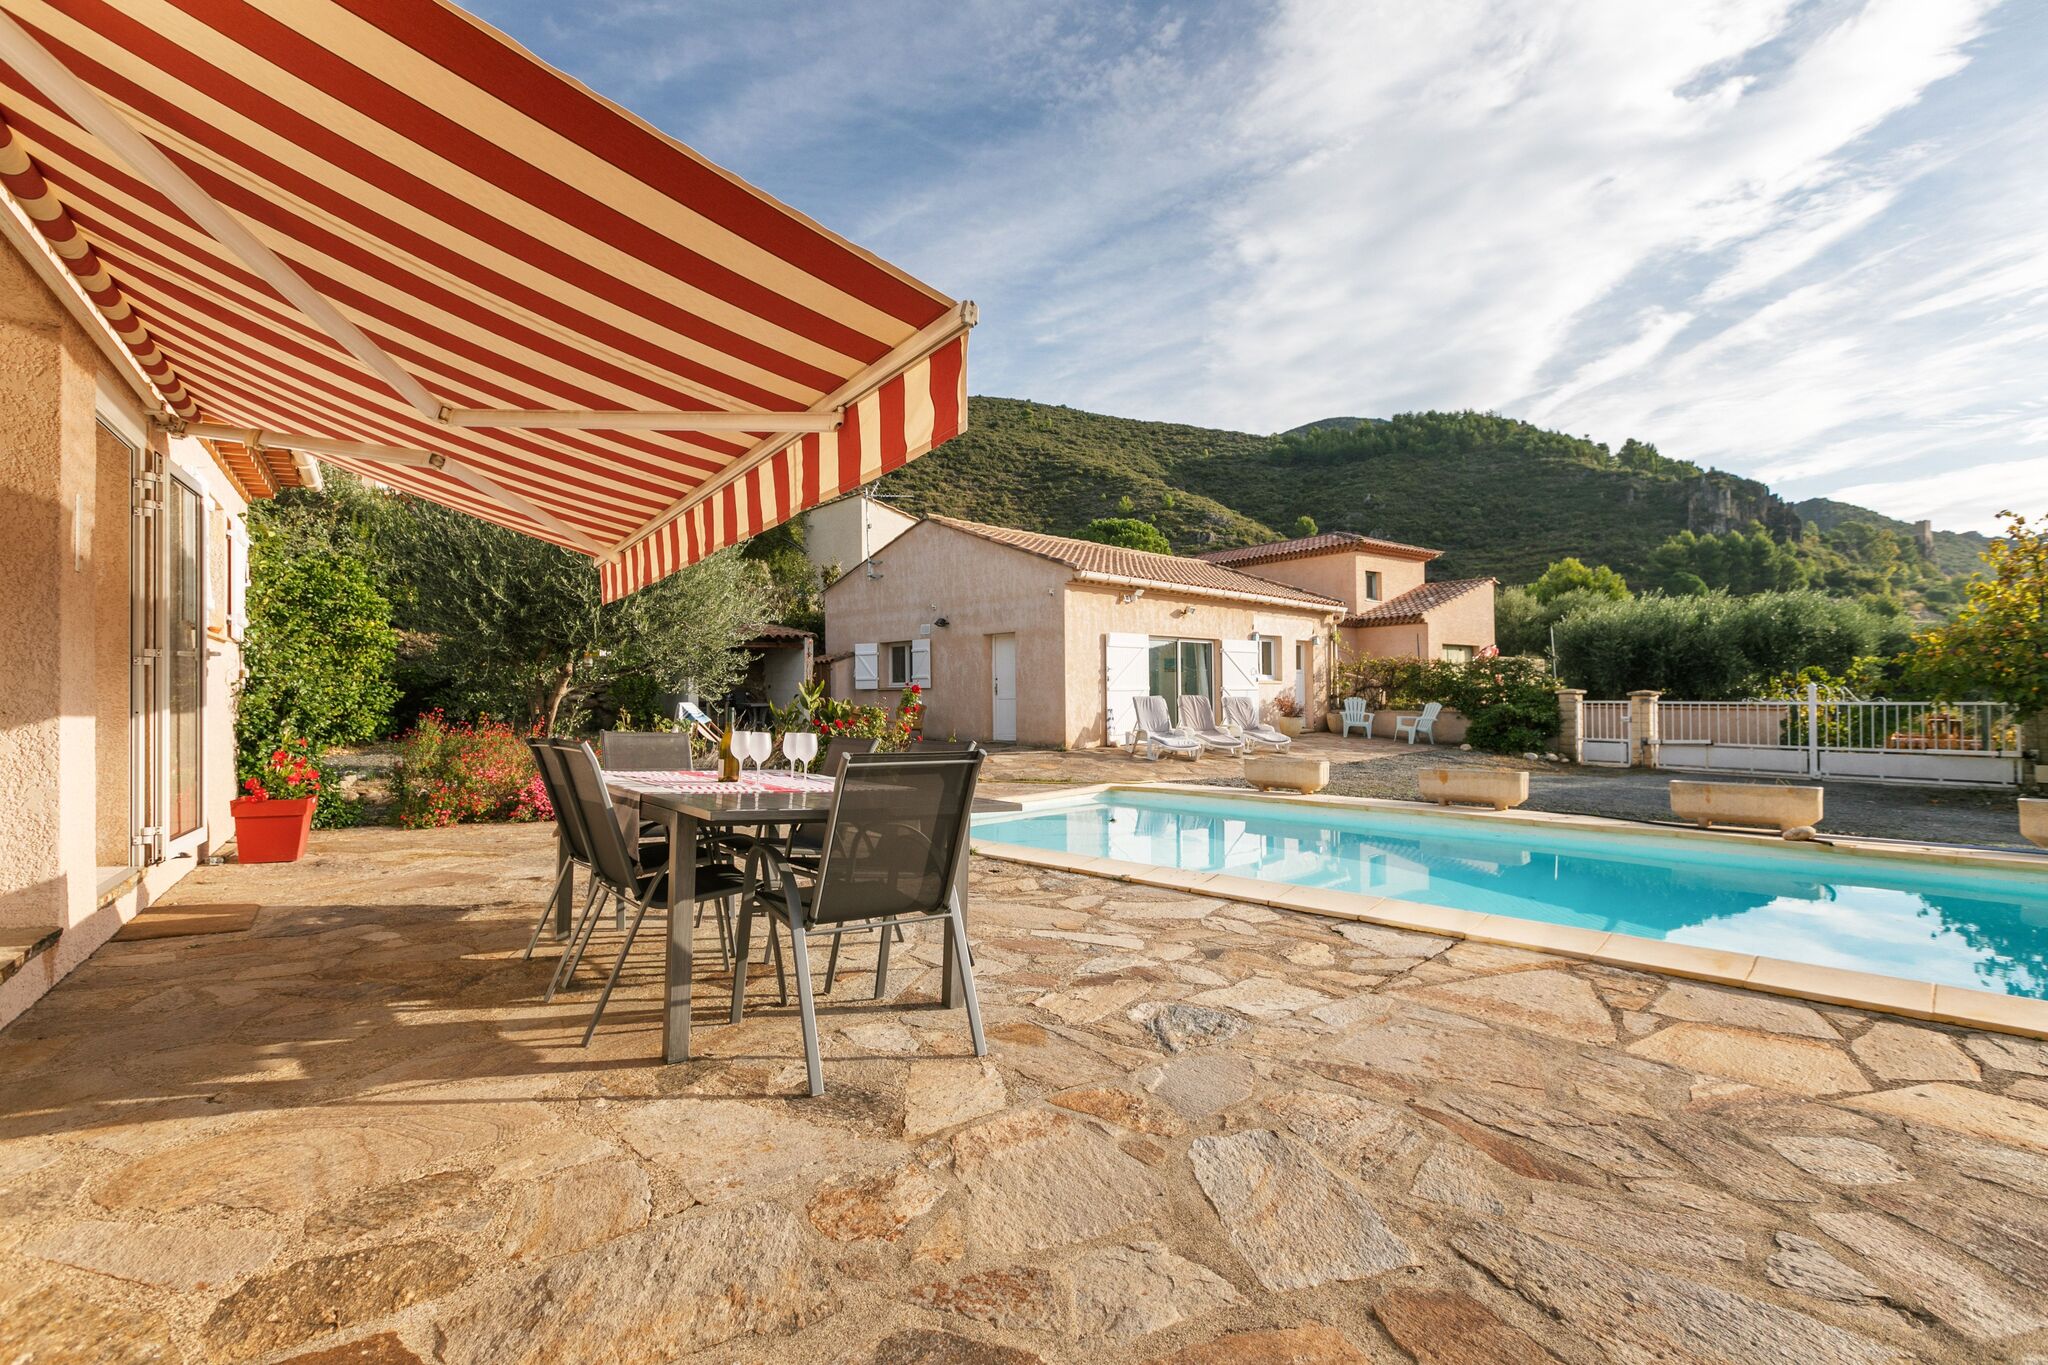 Elite-Ferienhaus in Südfrankreich mit eigenem Pool